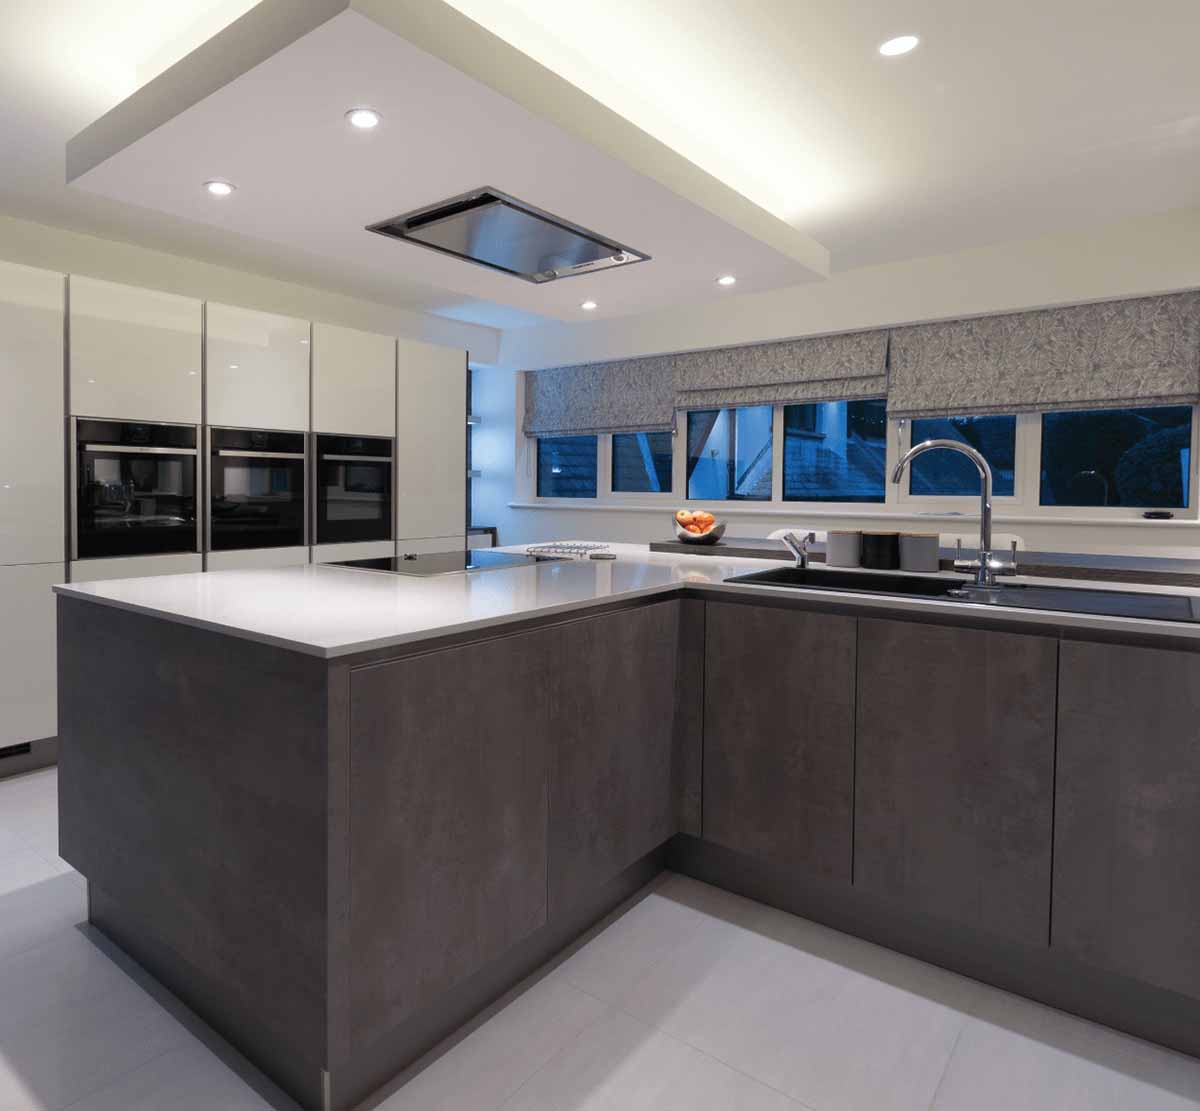 طراحی آشپزخانه مدرن و شیک با کابینت سفید و تیره و کناف سقف ساده و چارغ توکار و نور مخفی